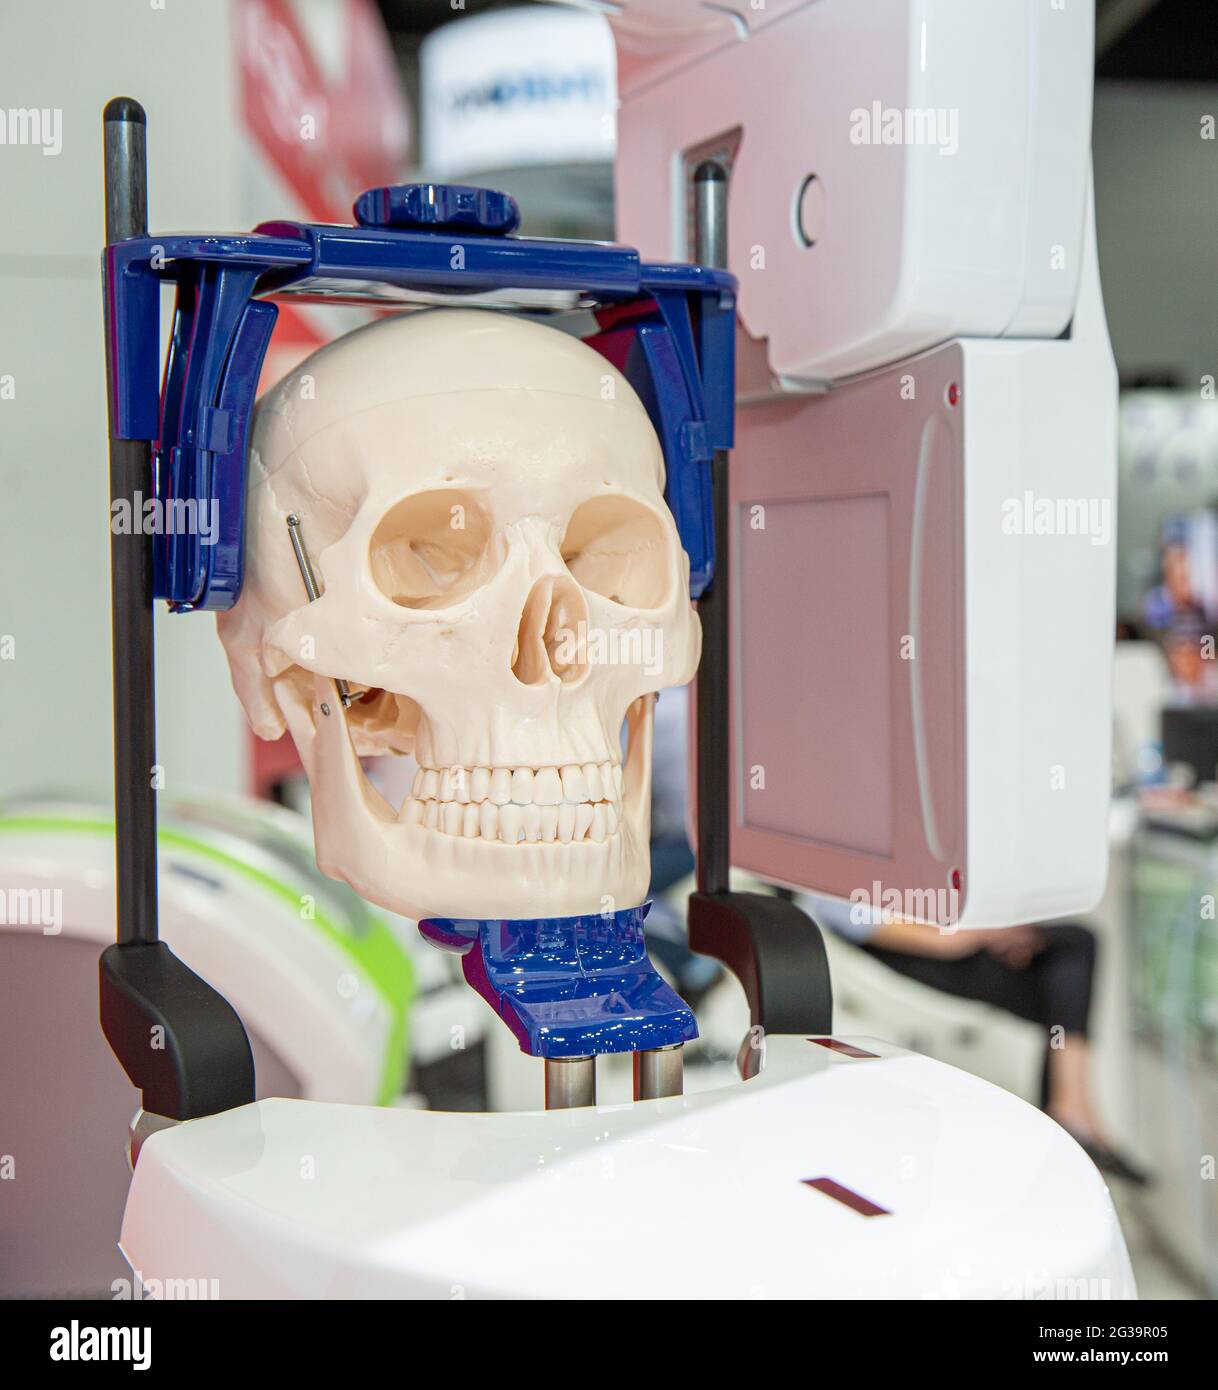 Crâne utilisé comme support dans un écran d'équipement dentaire Banque D'Images